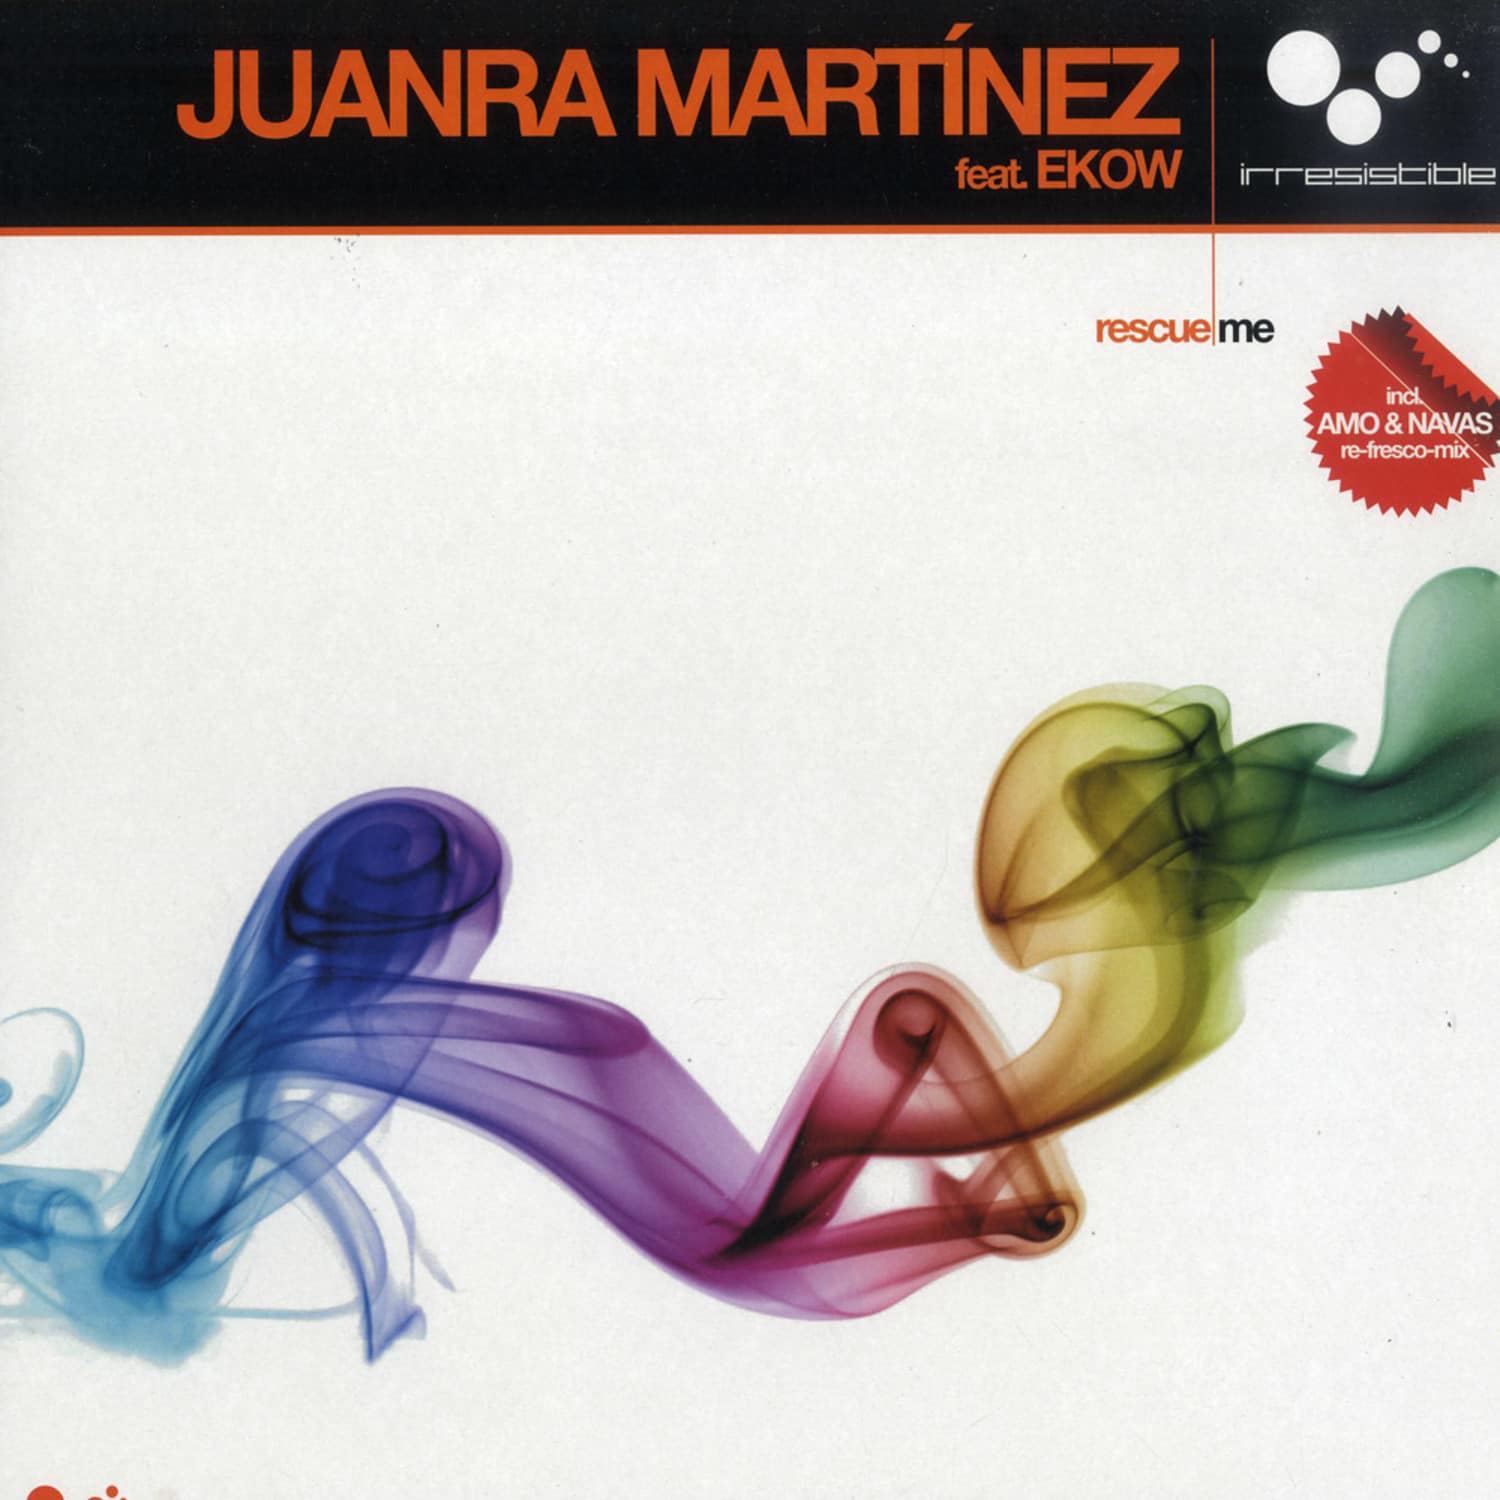 Juanra Martinez - RESCUE ME